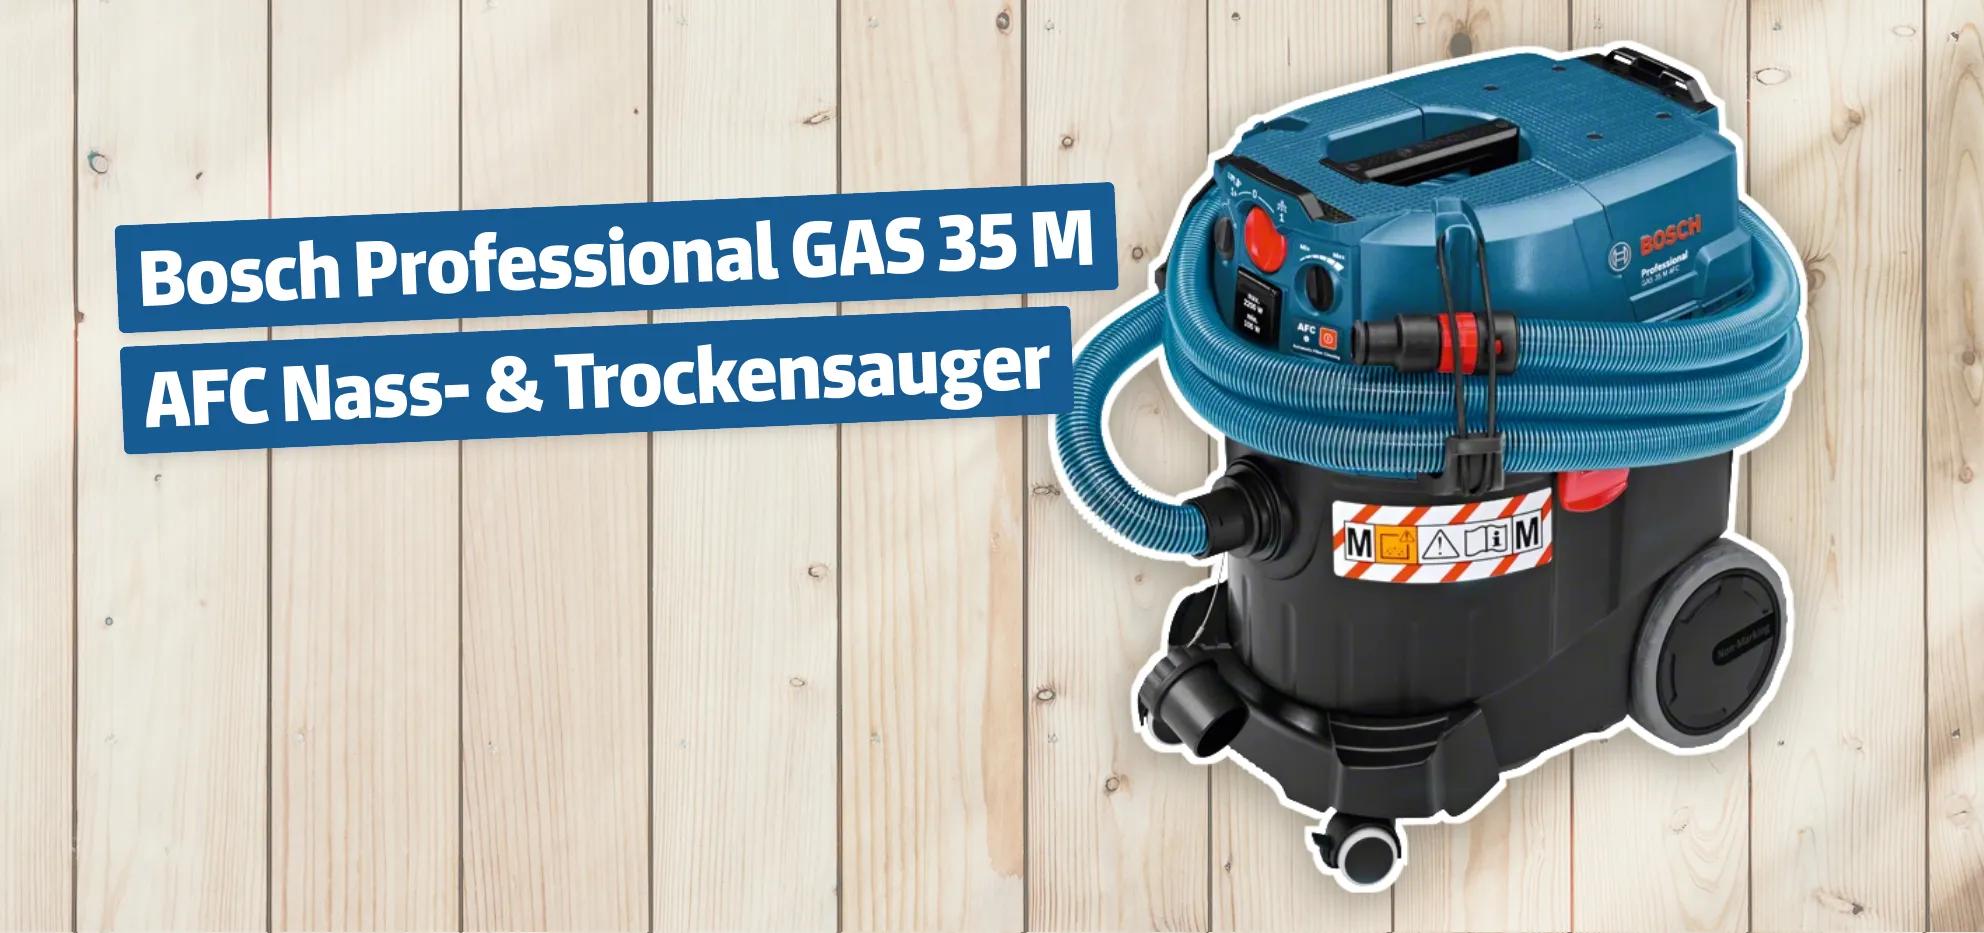 Bosch Professional GAS 35 M AFC Nass- & Trockensauger